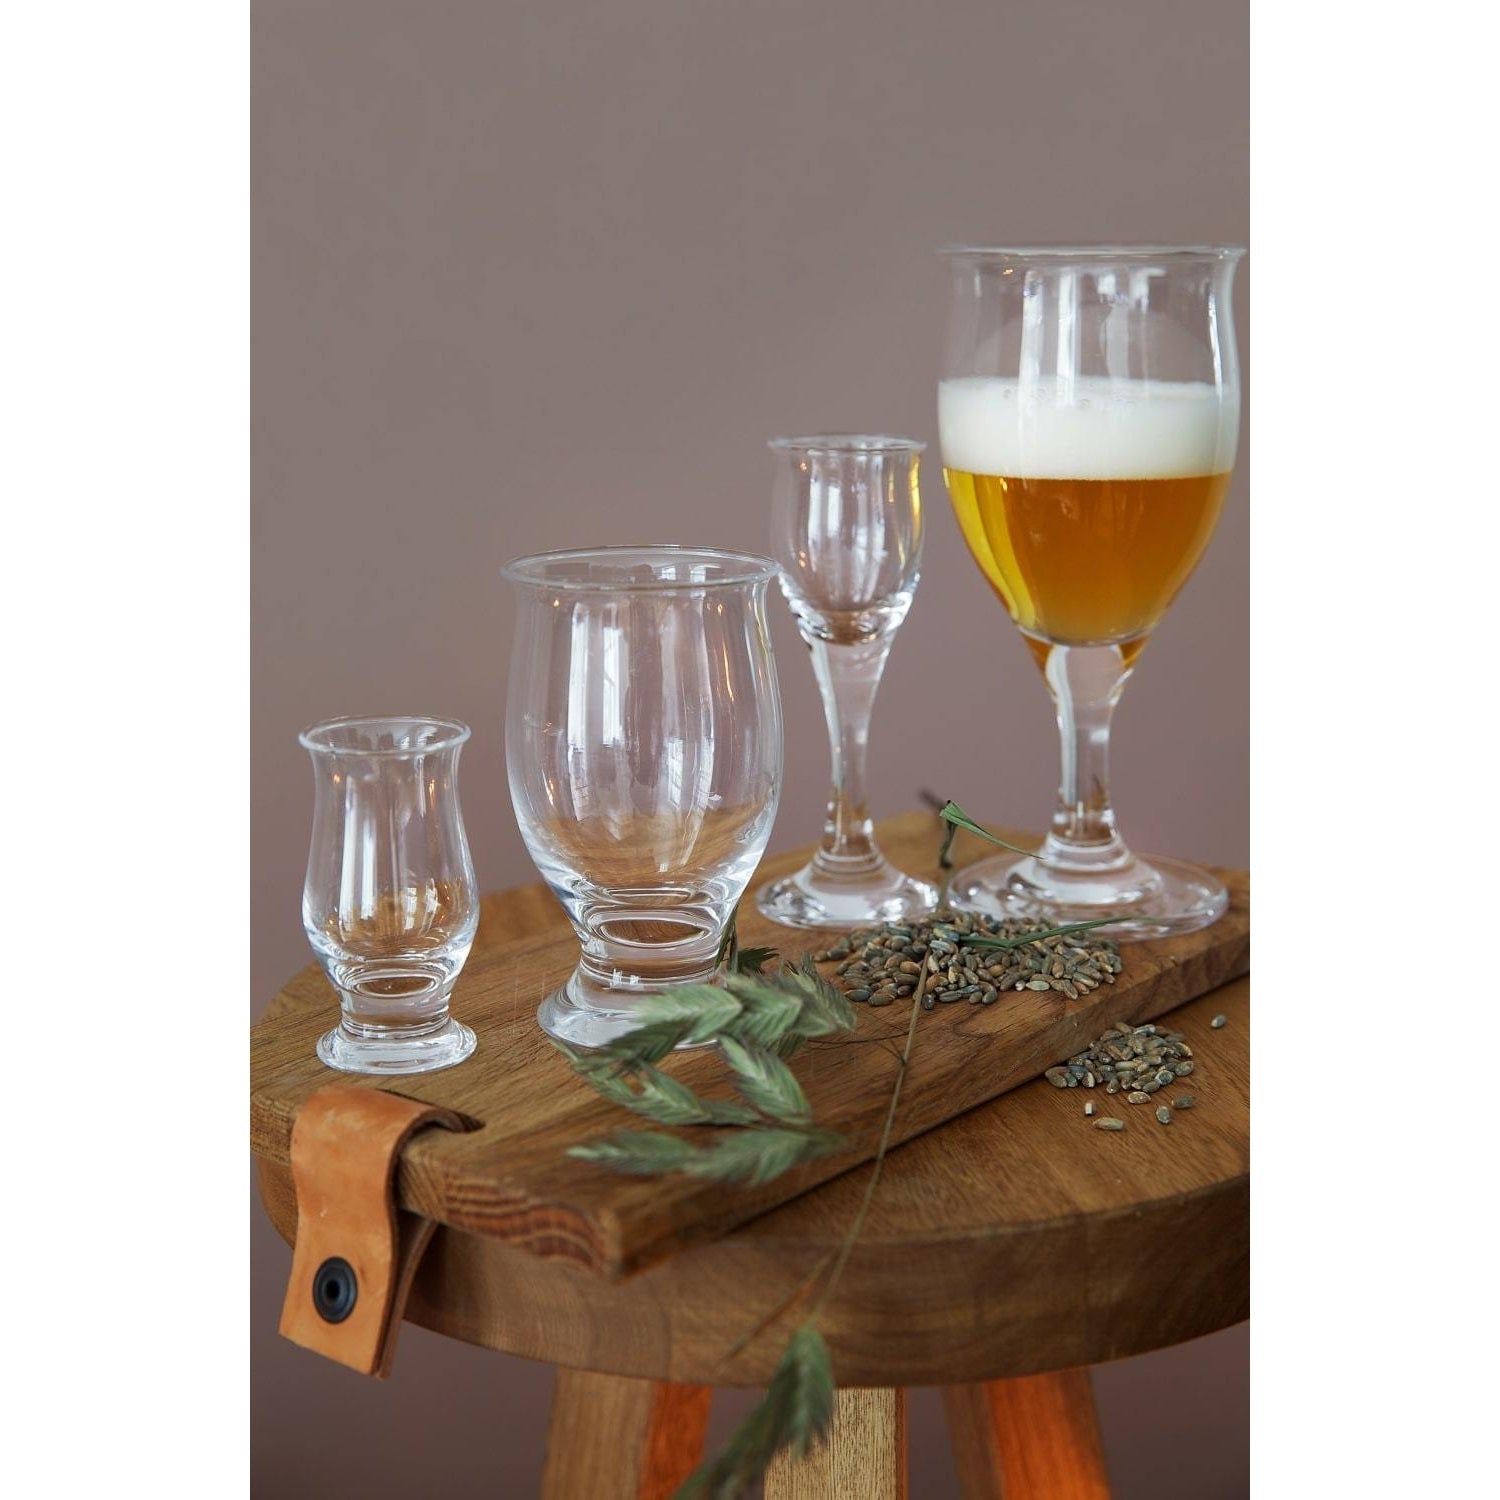 Holmegaard idéelle ølglass med stil